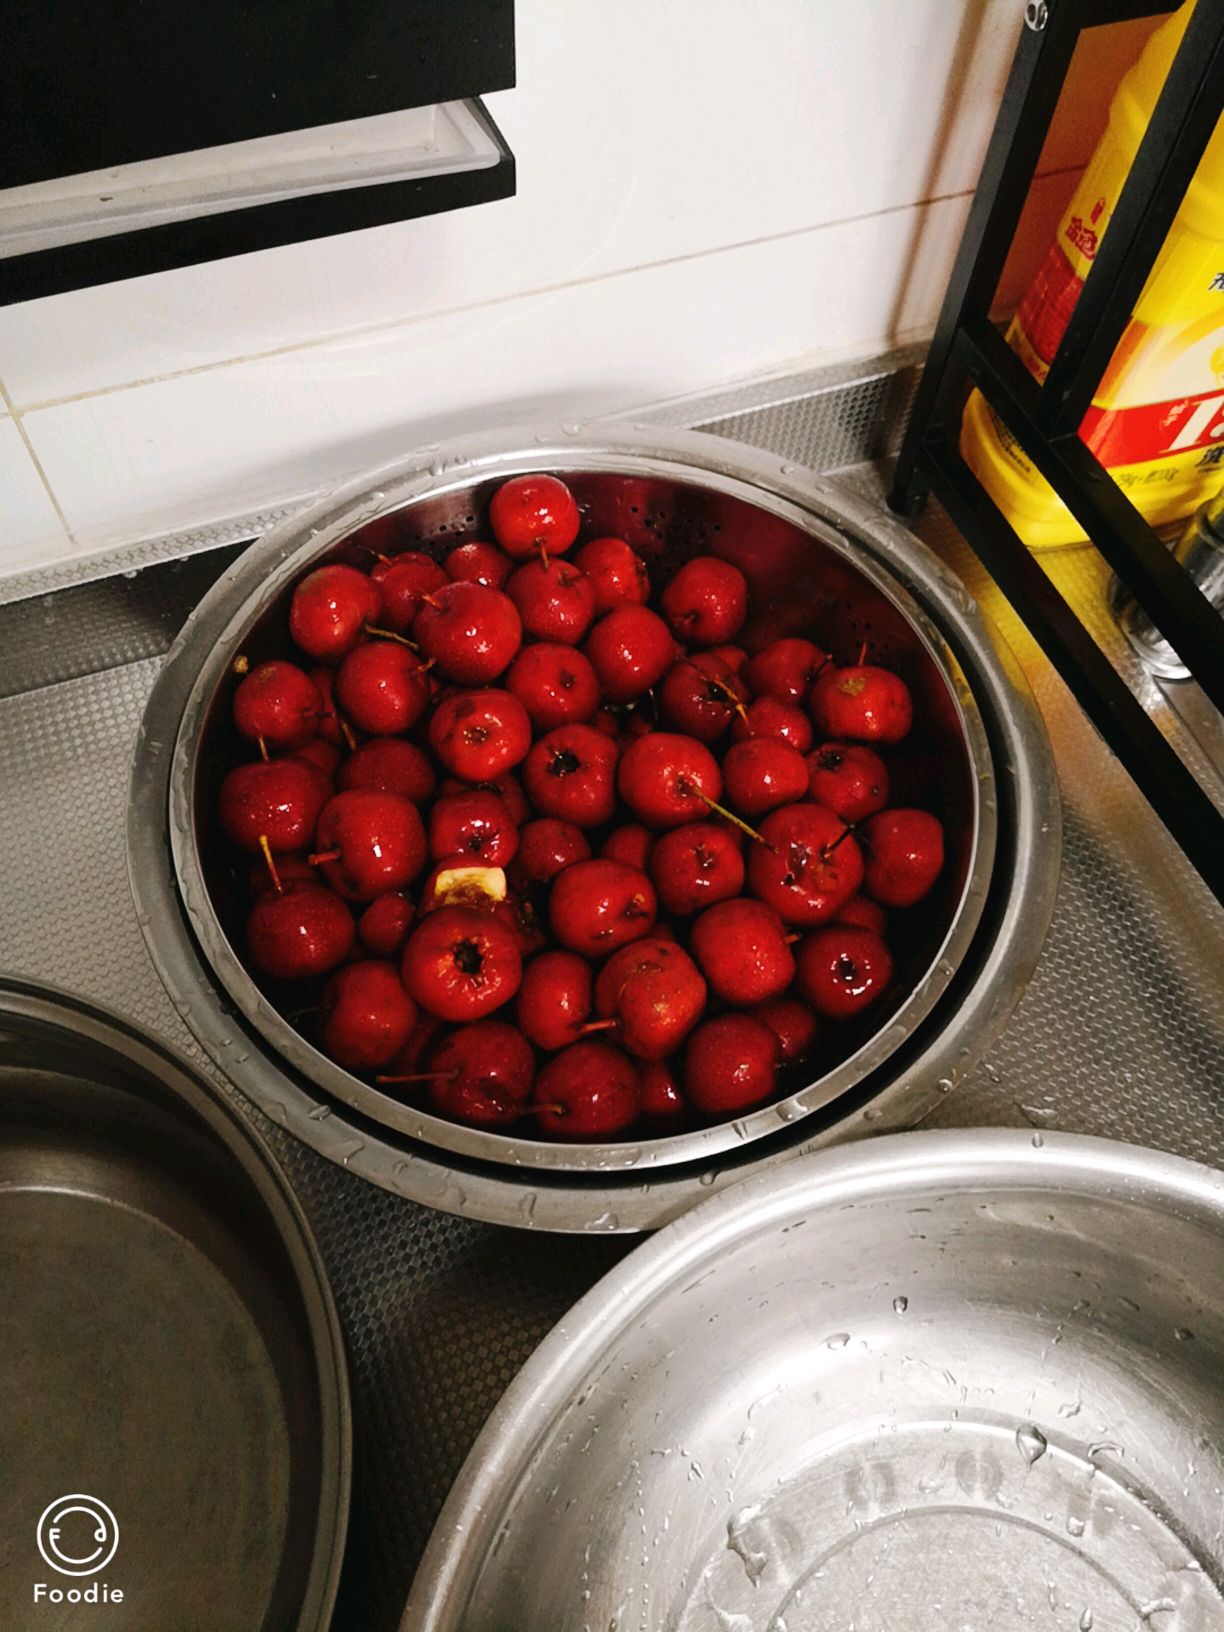 炒红果怎么做_炒红果的做法_纳木措畔的曼陀罗_豆果美食